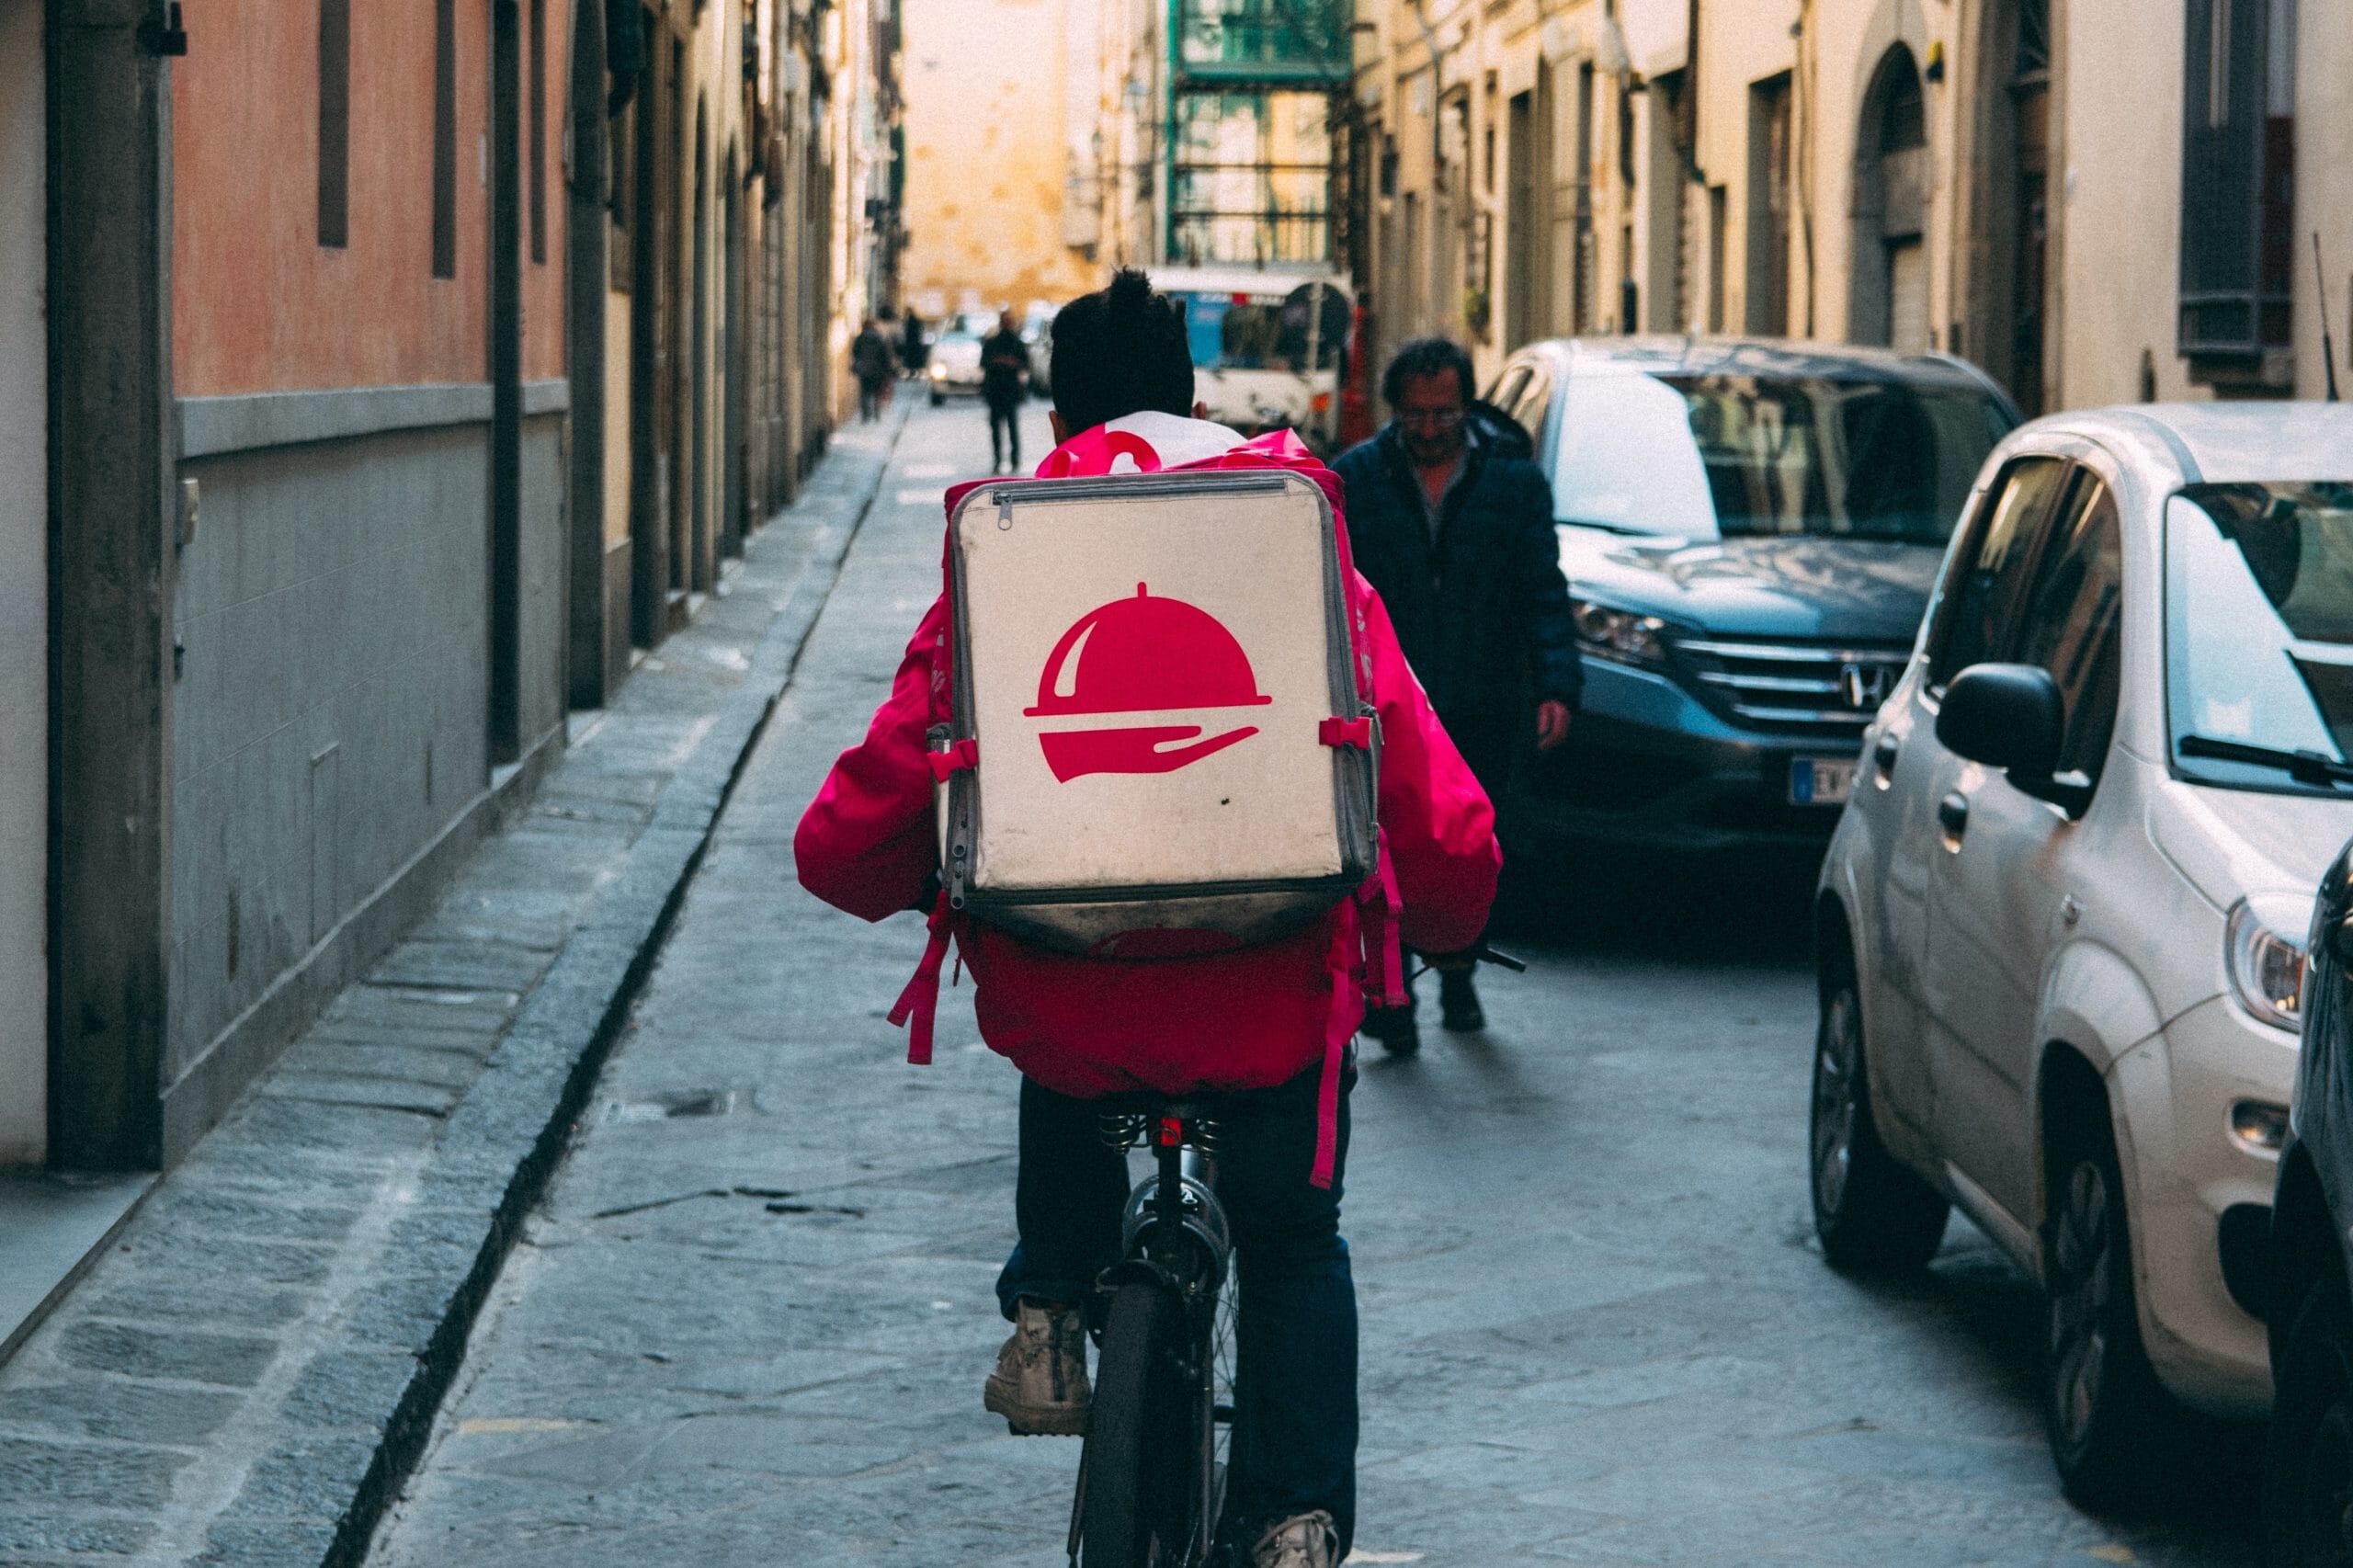 Eine Person, die mit einem Pizzakarton auf dem Rücken Fahrrad fährt, möglicherweise ein Startup-Lieferdienst.